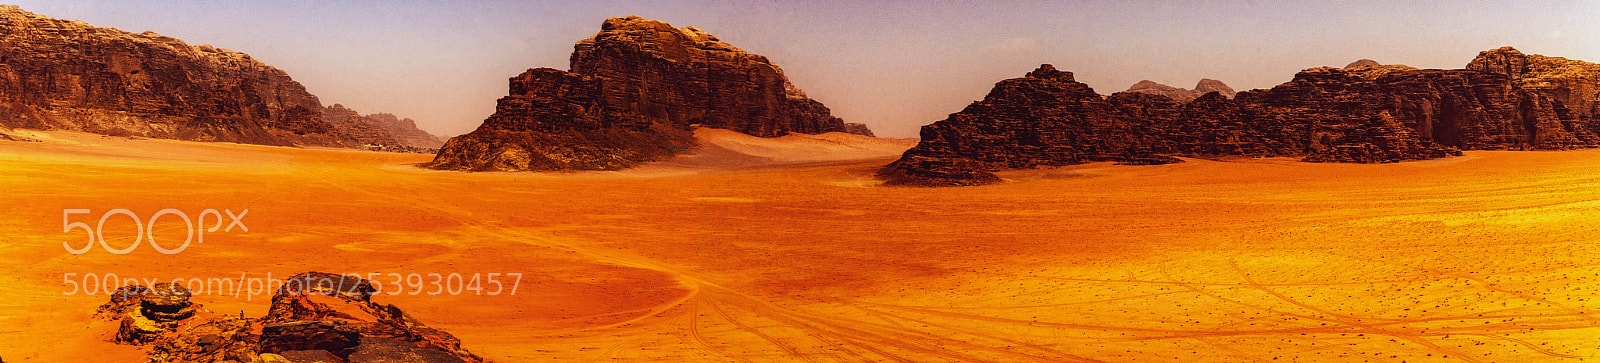 Nikon D7000 sample photo. Bedouin highway panorama photography